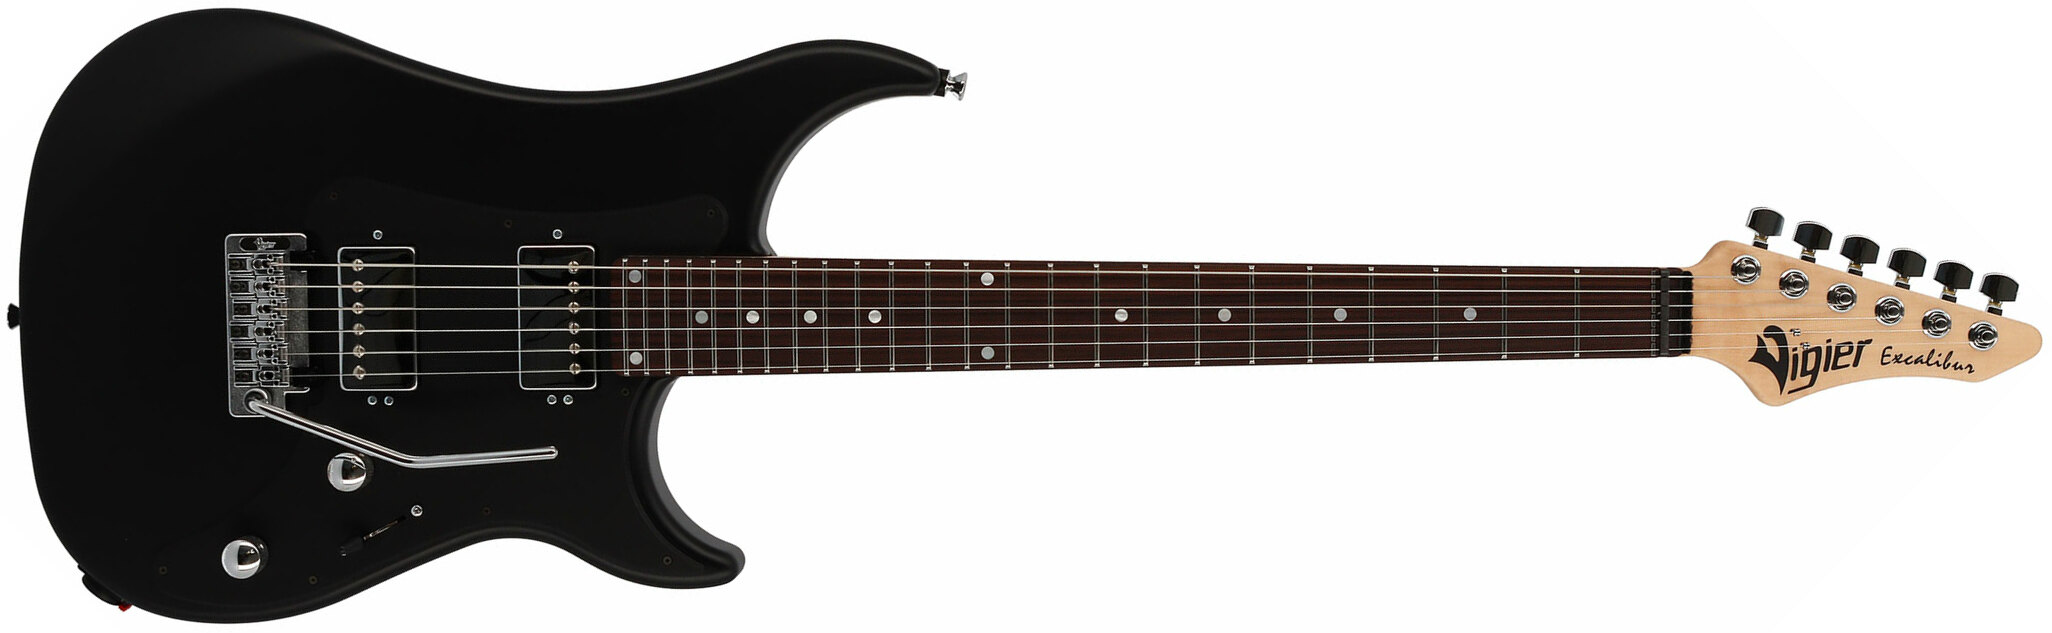 Vigier Excalibur Indus 2h Trem Rw - Black Matte - Guitarra eléctrica de doble corte - Main picture